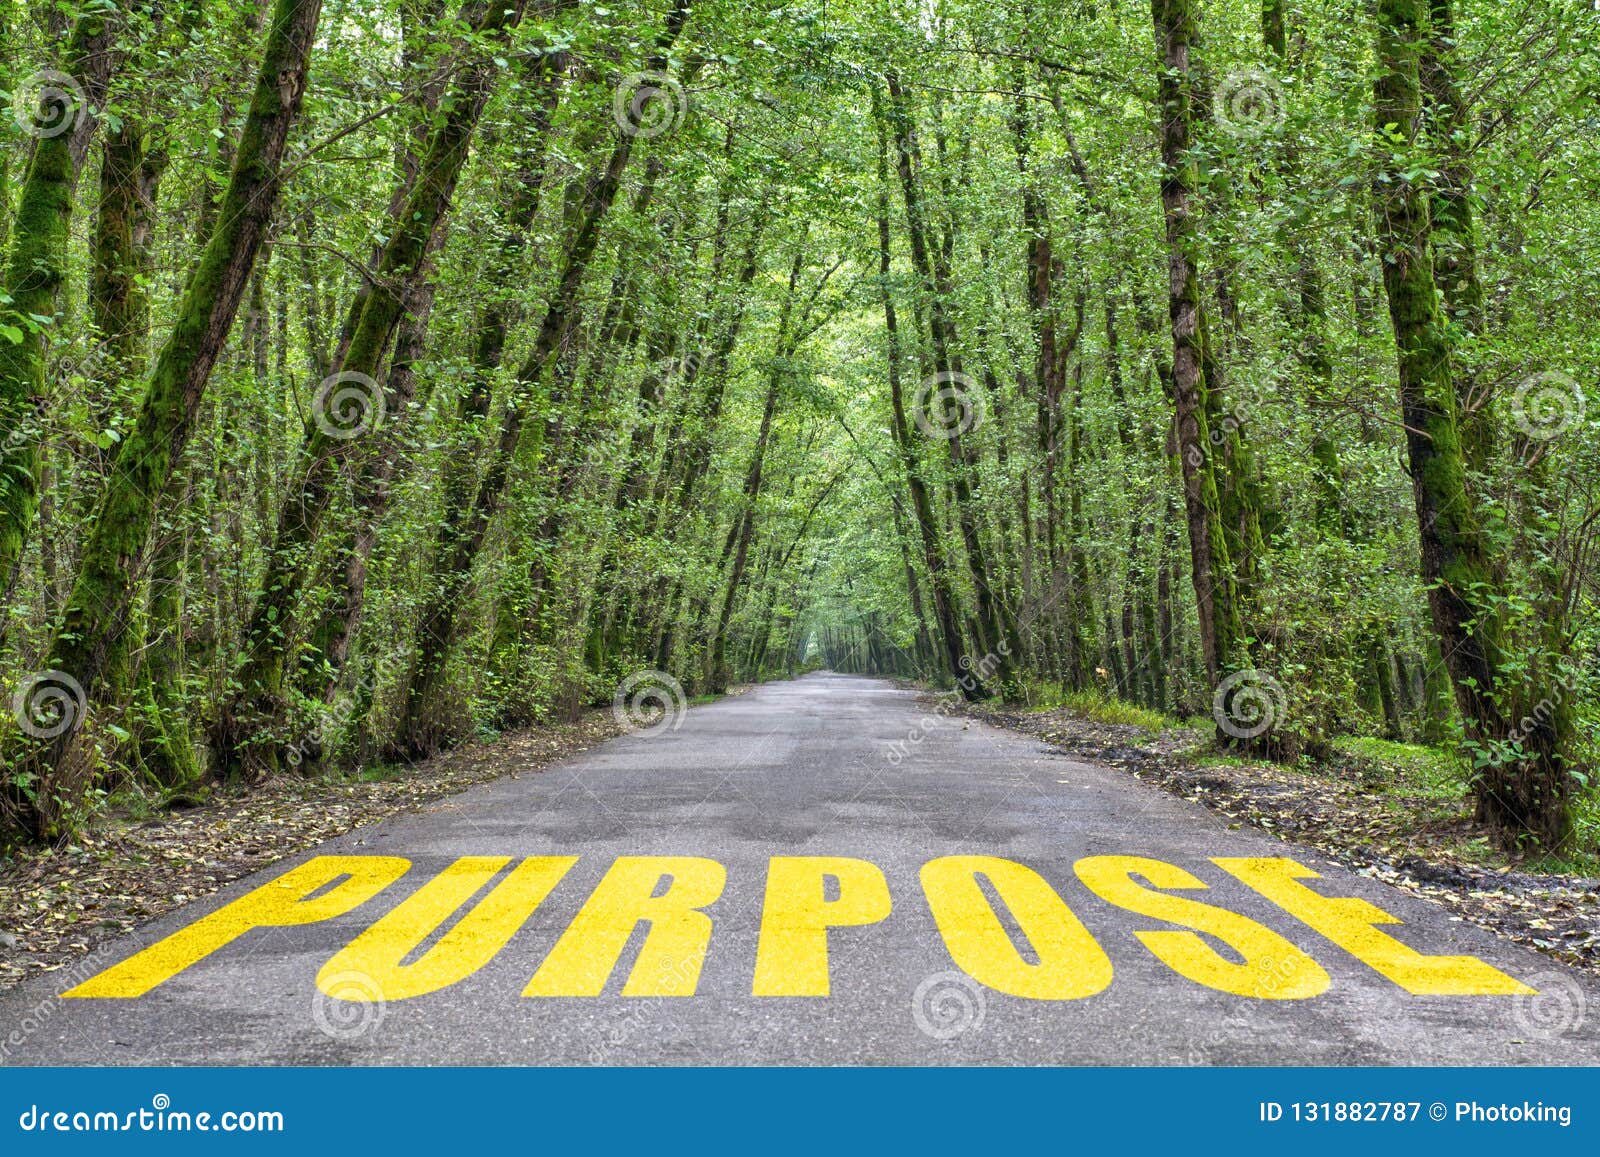 jungle road to purpose